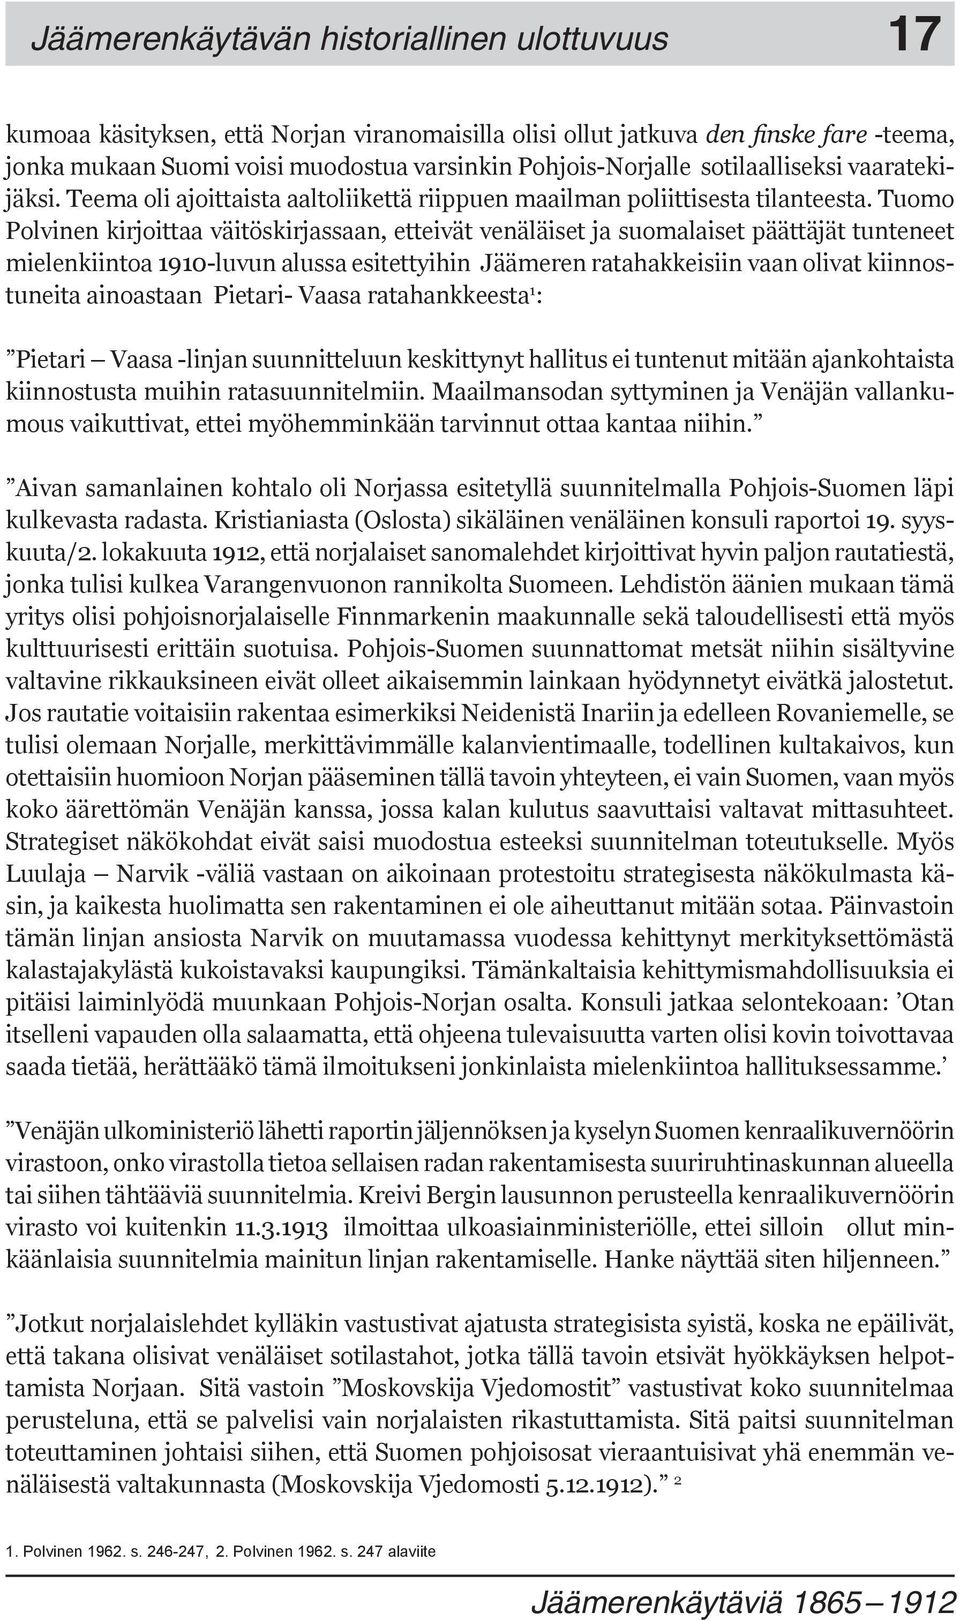 Tuomo Polvinen kirjoittaa väitöskirjassaan, etteivät venäläiset ja suomalaiset päättäjät tunteneet mielenkiintoa 1910-luvun alussa esitettyihin Jäämeren ratahakkeisiin vaan olivat kiinnostuneita